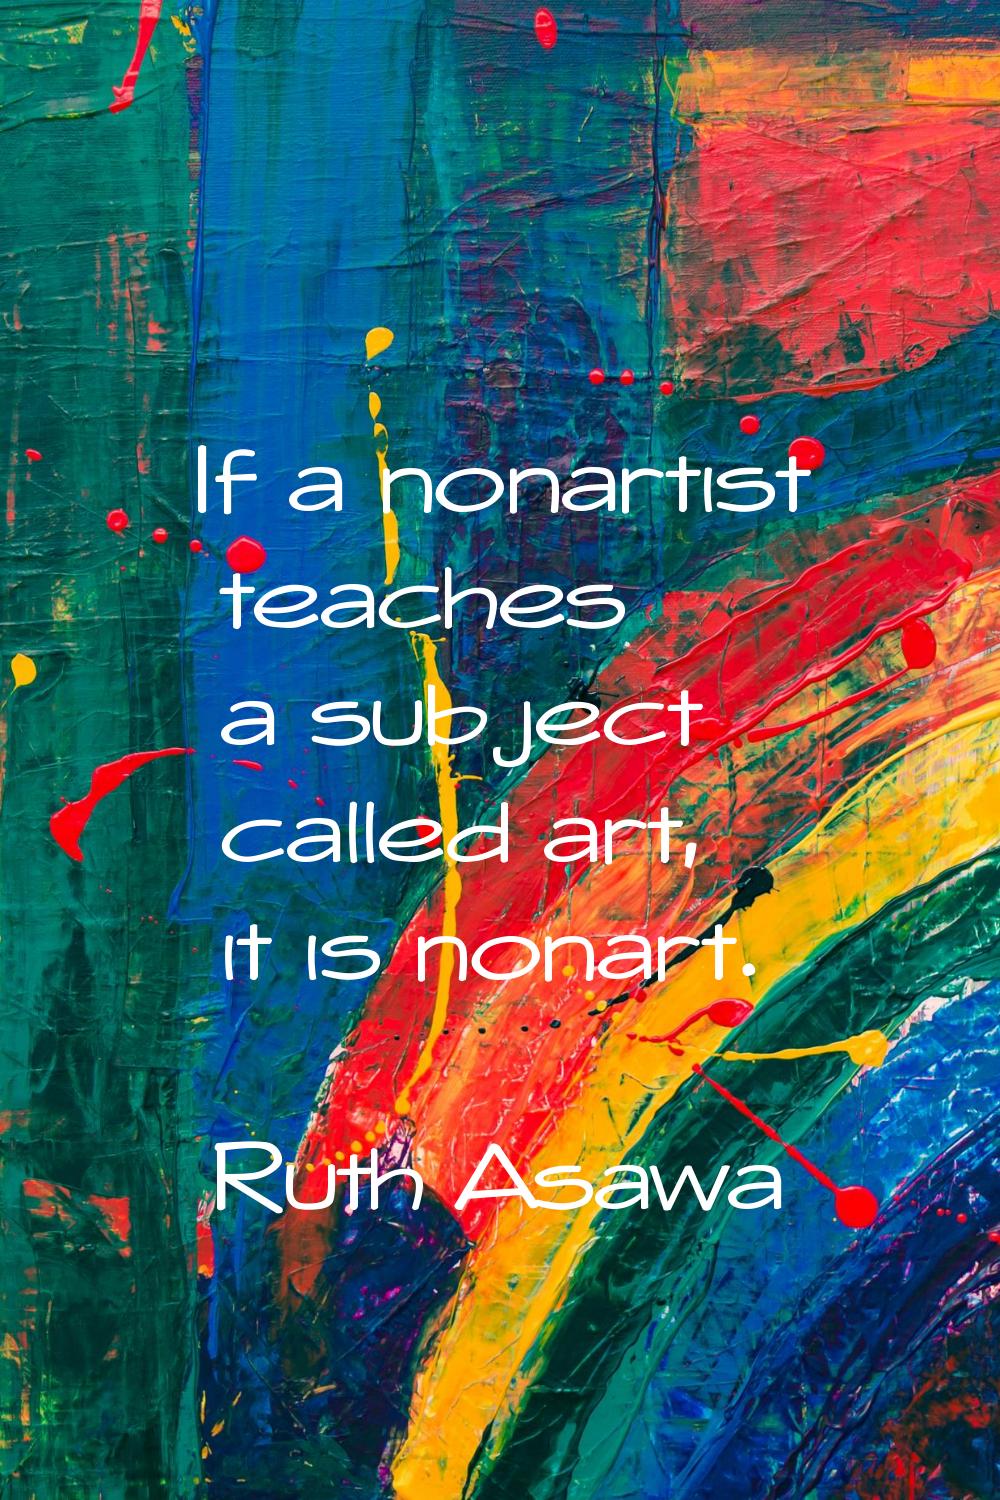 If a nonartist teaches a subject called art, it is nonart.